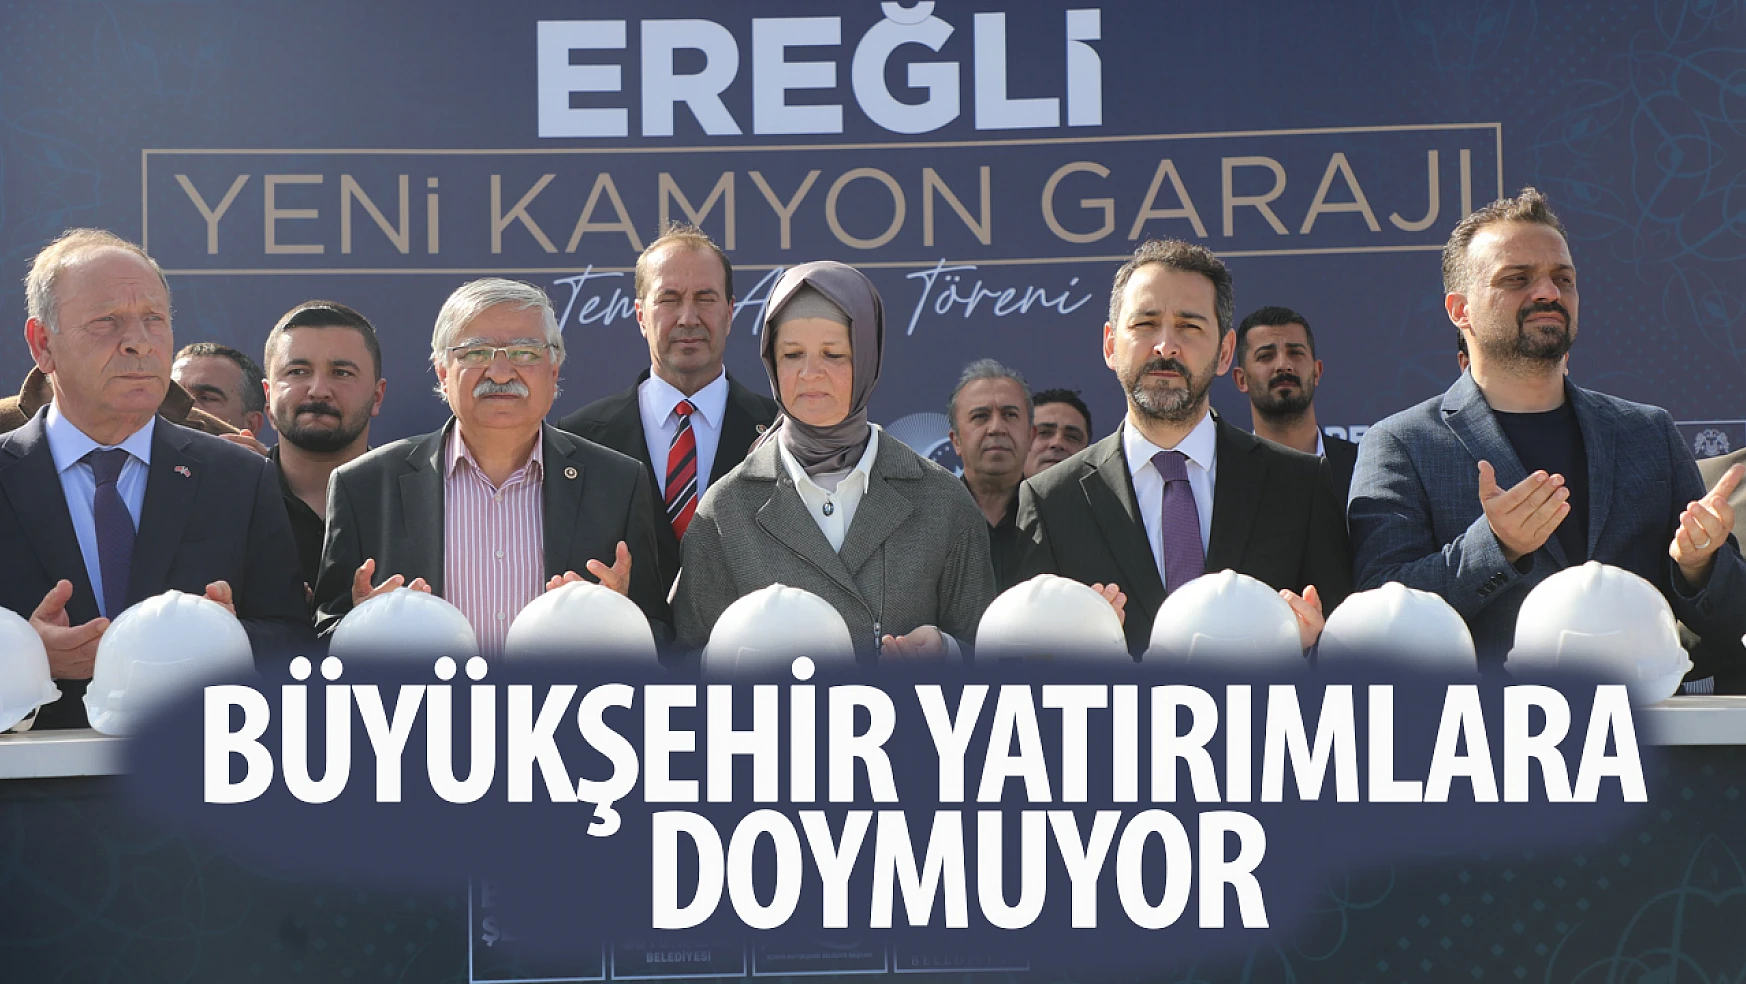 Konya Büyükşehir Belediyesi, Ereğli'ye Kamyon Garajı Kazandırıyor